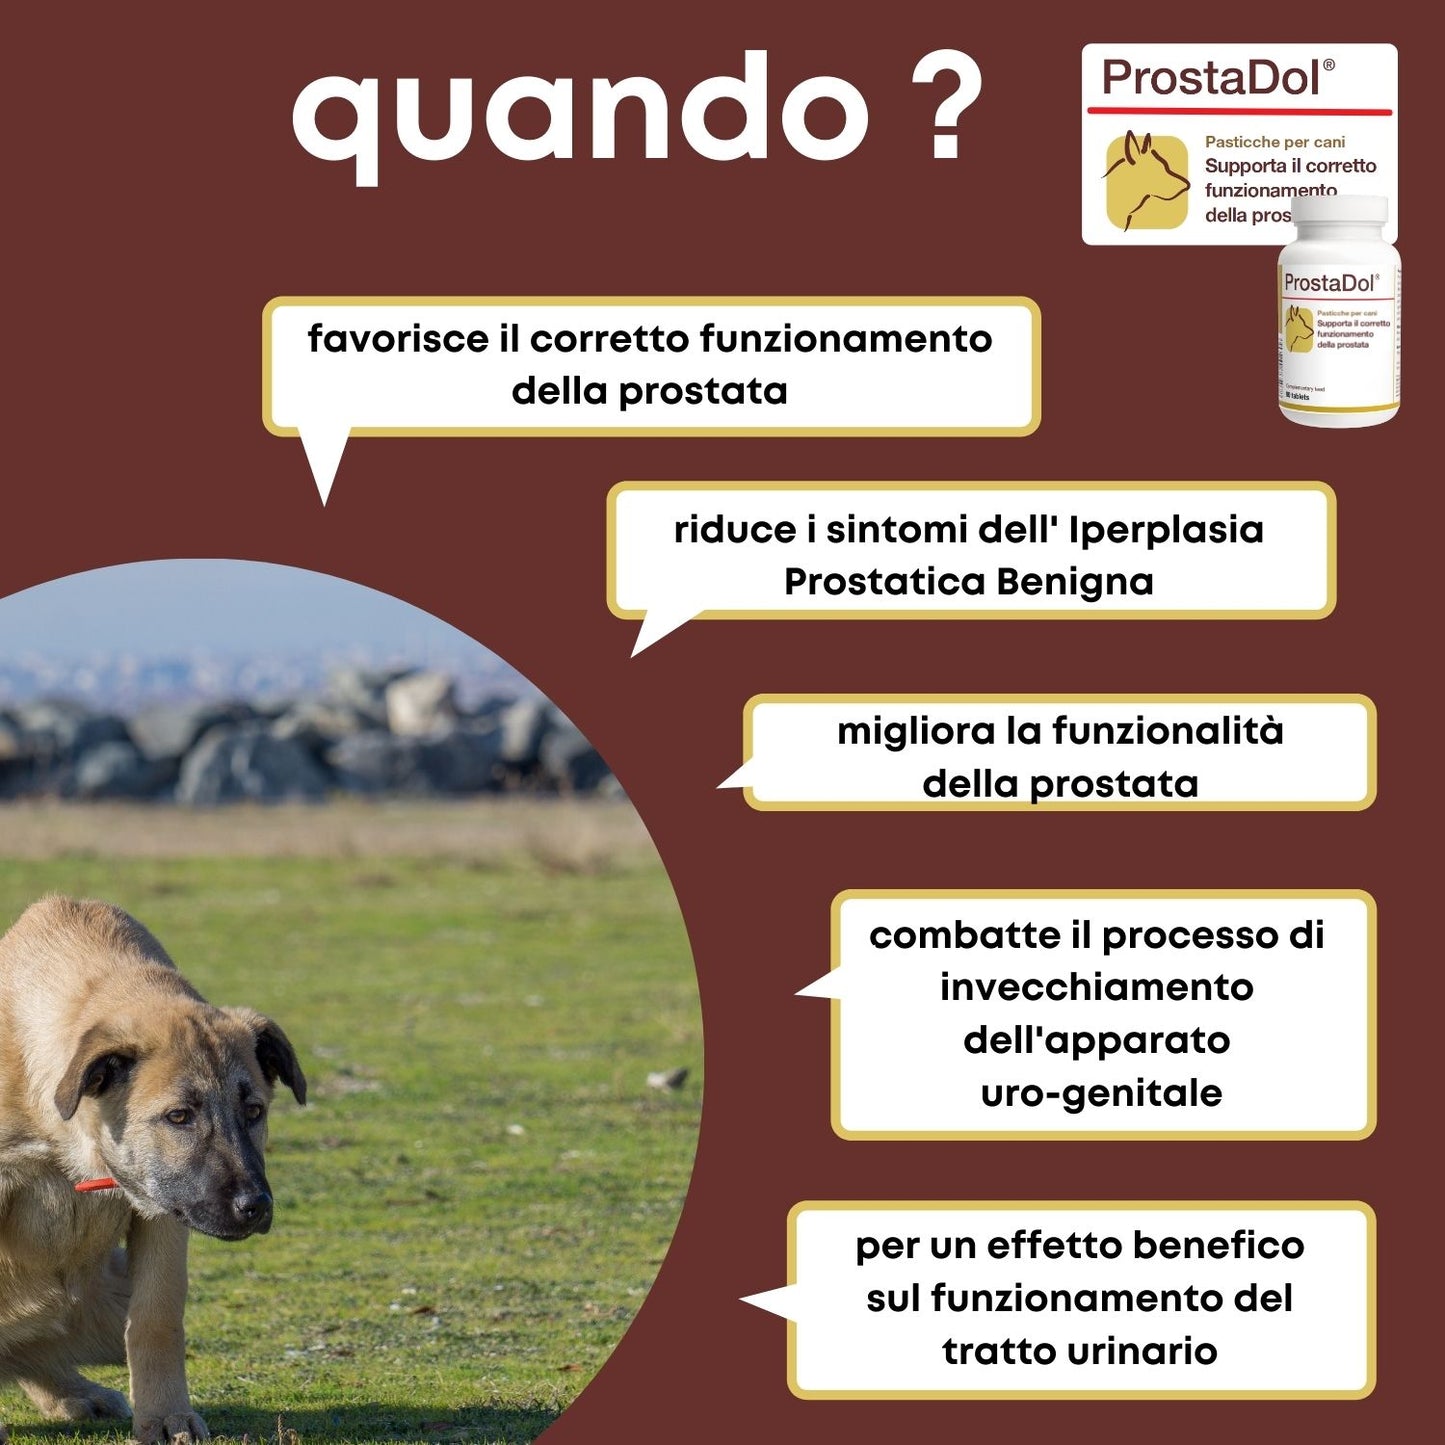 ProstaDol 90 ".... favorisce la funzionalità del prostata del cane ...."